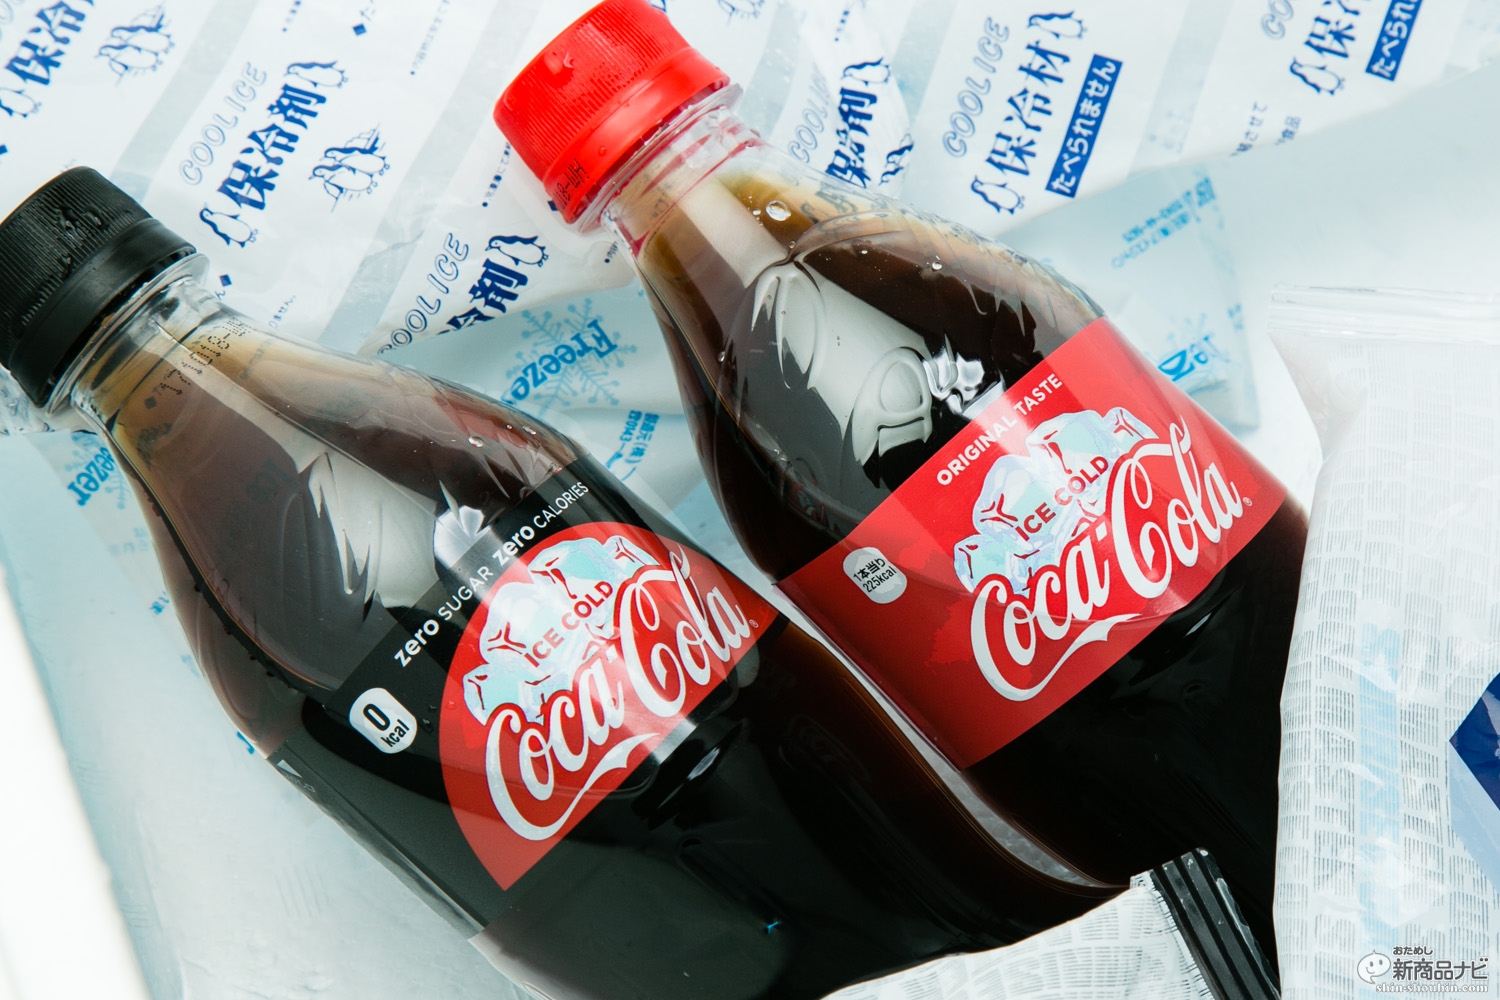 おためし新商品ナビ » Blog Archive » 『コカ・コーラ/コカ・コーラ 